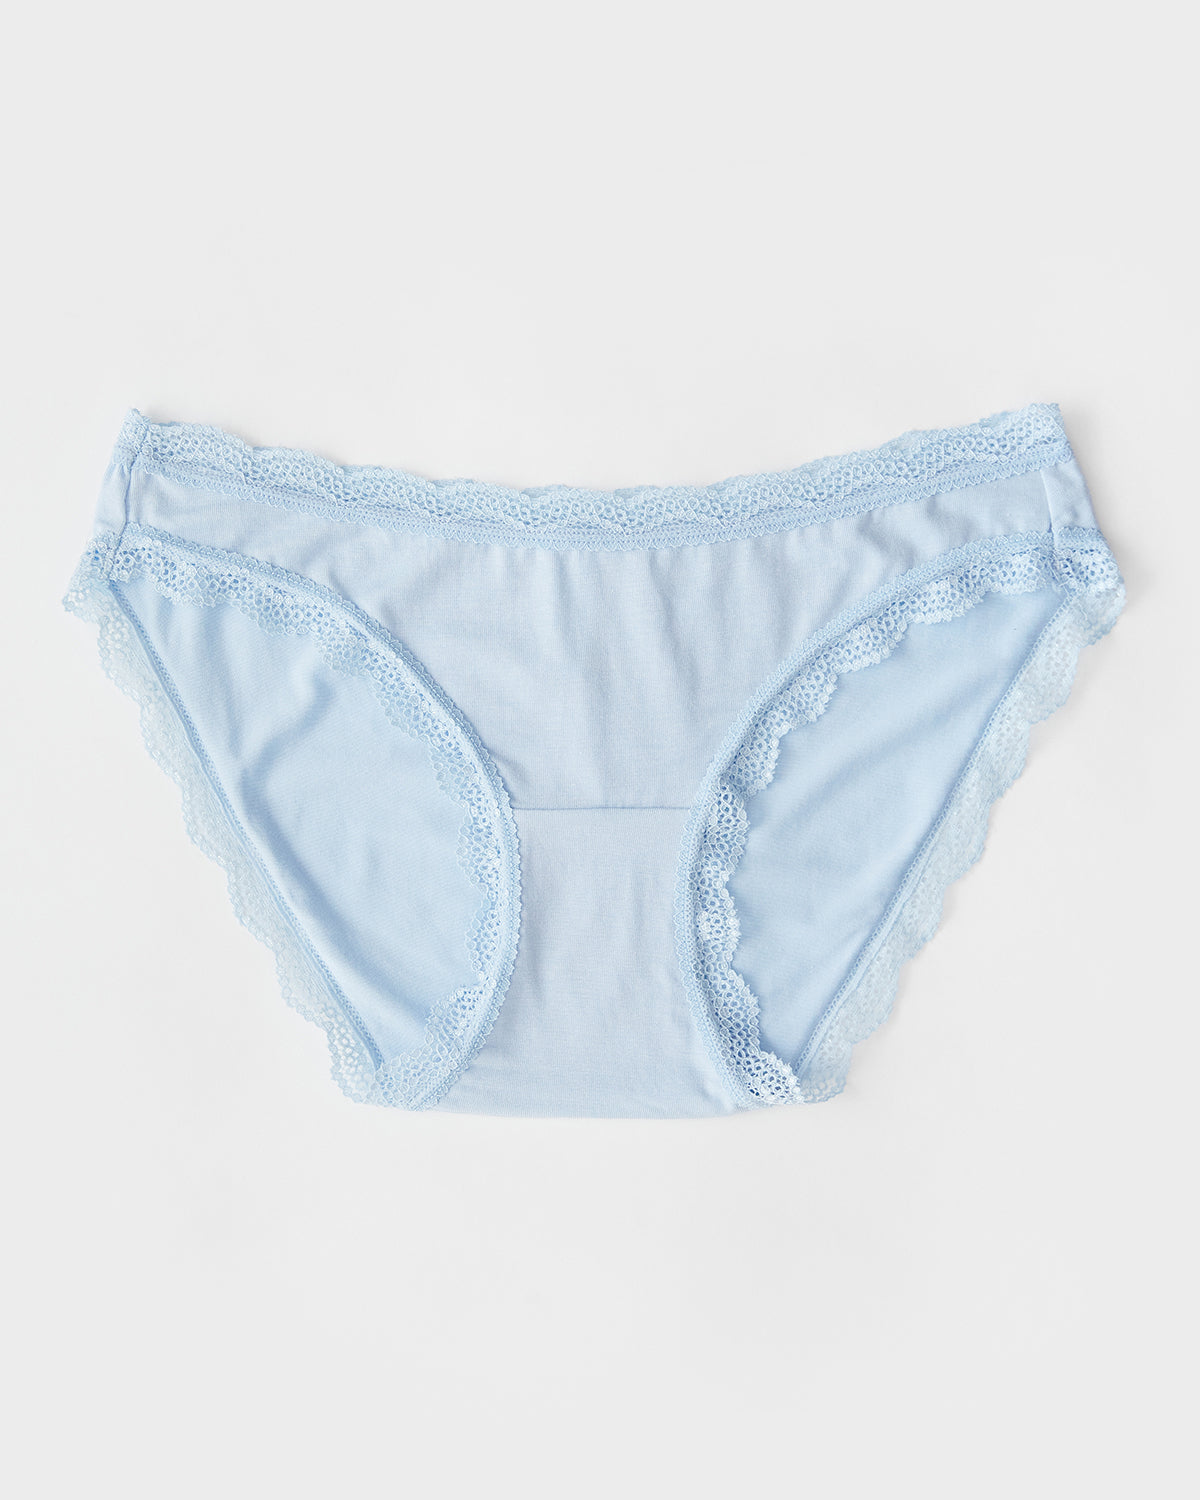 Girls Blue Underwear.